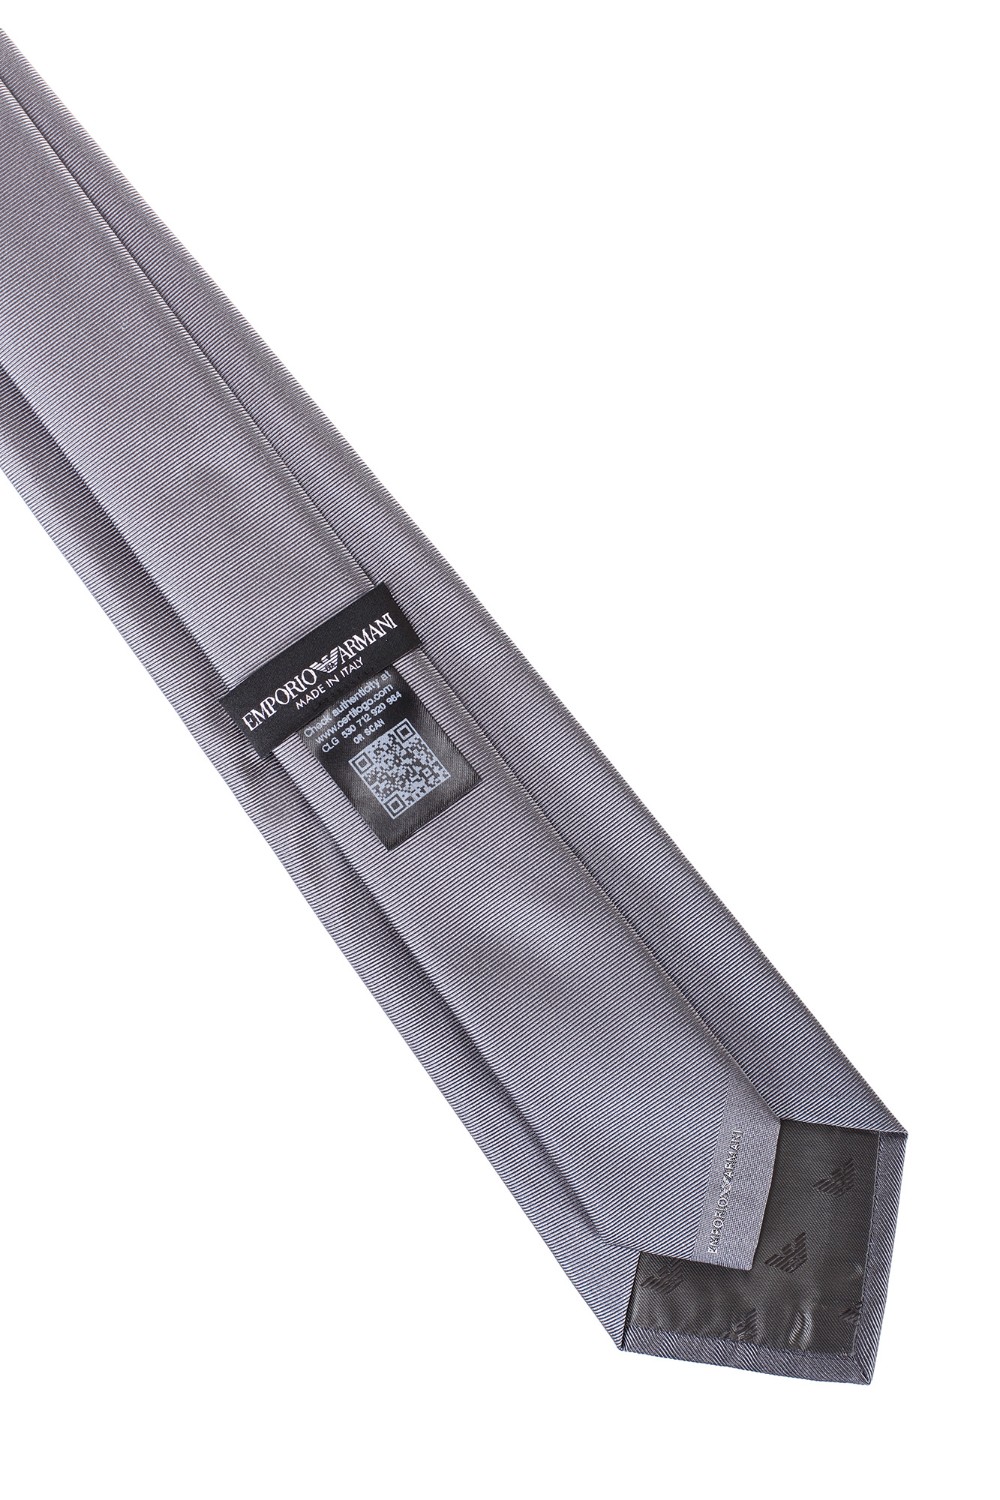 shop EMPORIO ARMANI  Cravatta: Emporio Armani cravatta in pura seta.
Dimensioni: 146 x 7,5 cm.
Composizione: 100% seta.
Fabbricato in Italia.. 340075 2R600-00041 number 6629913